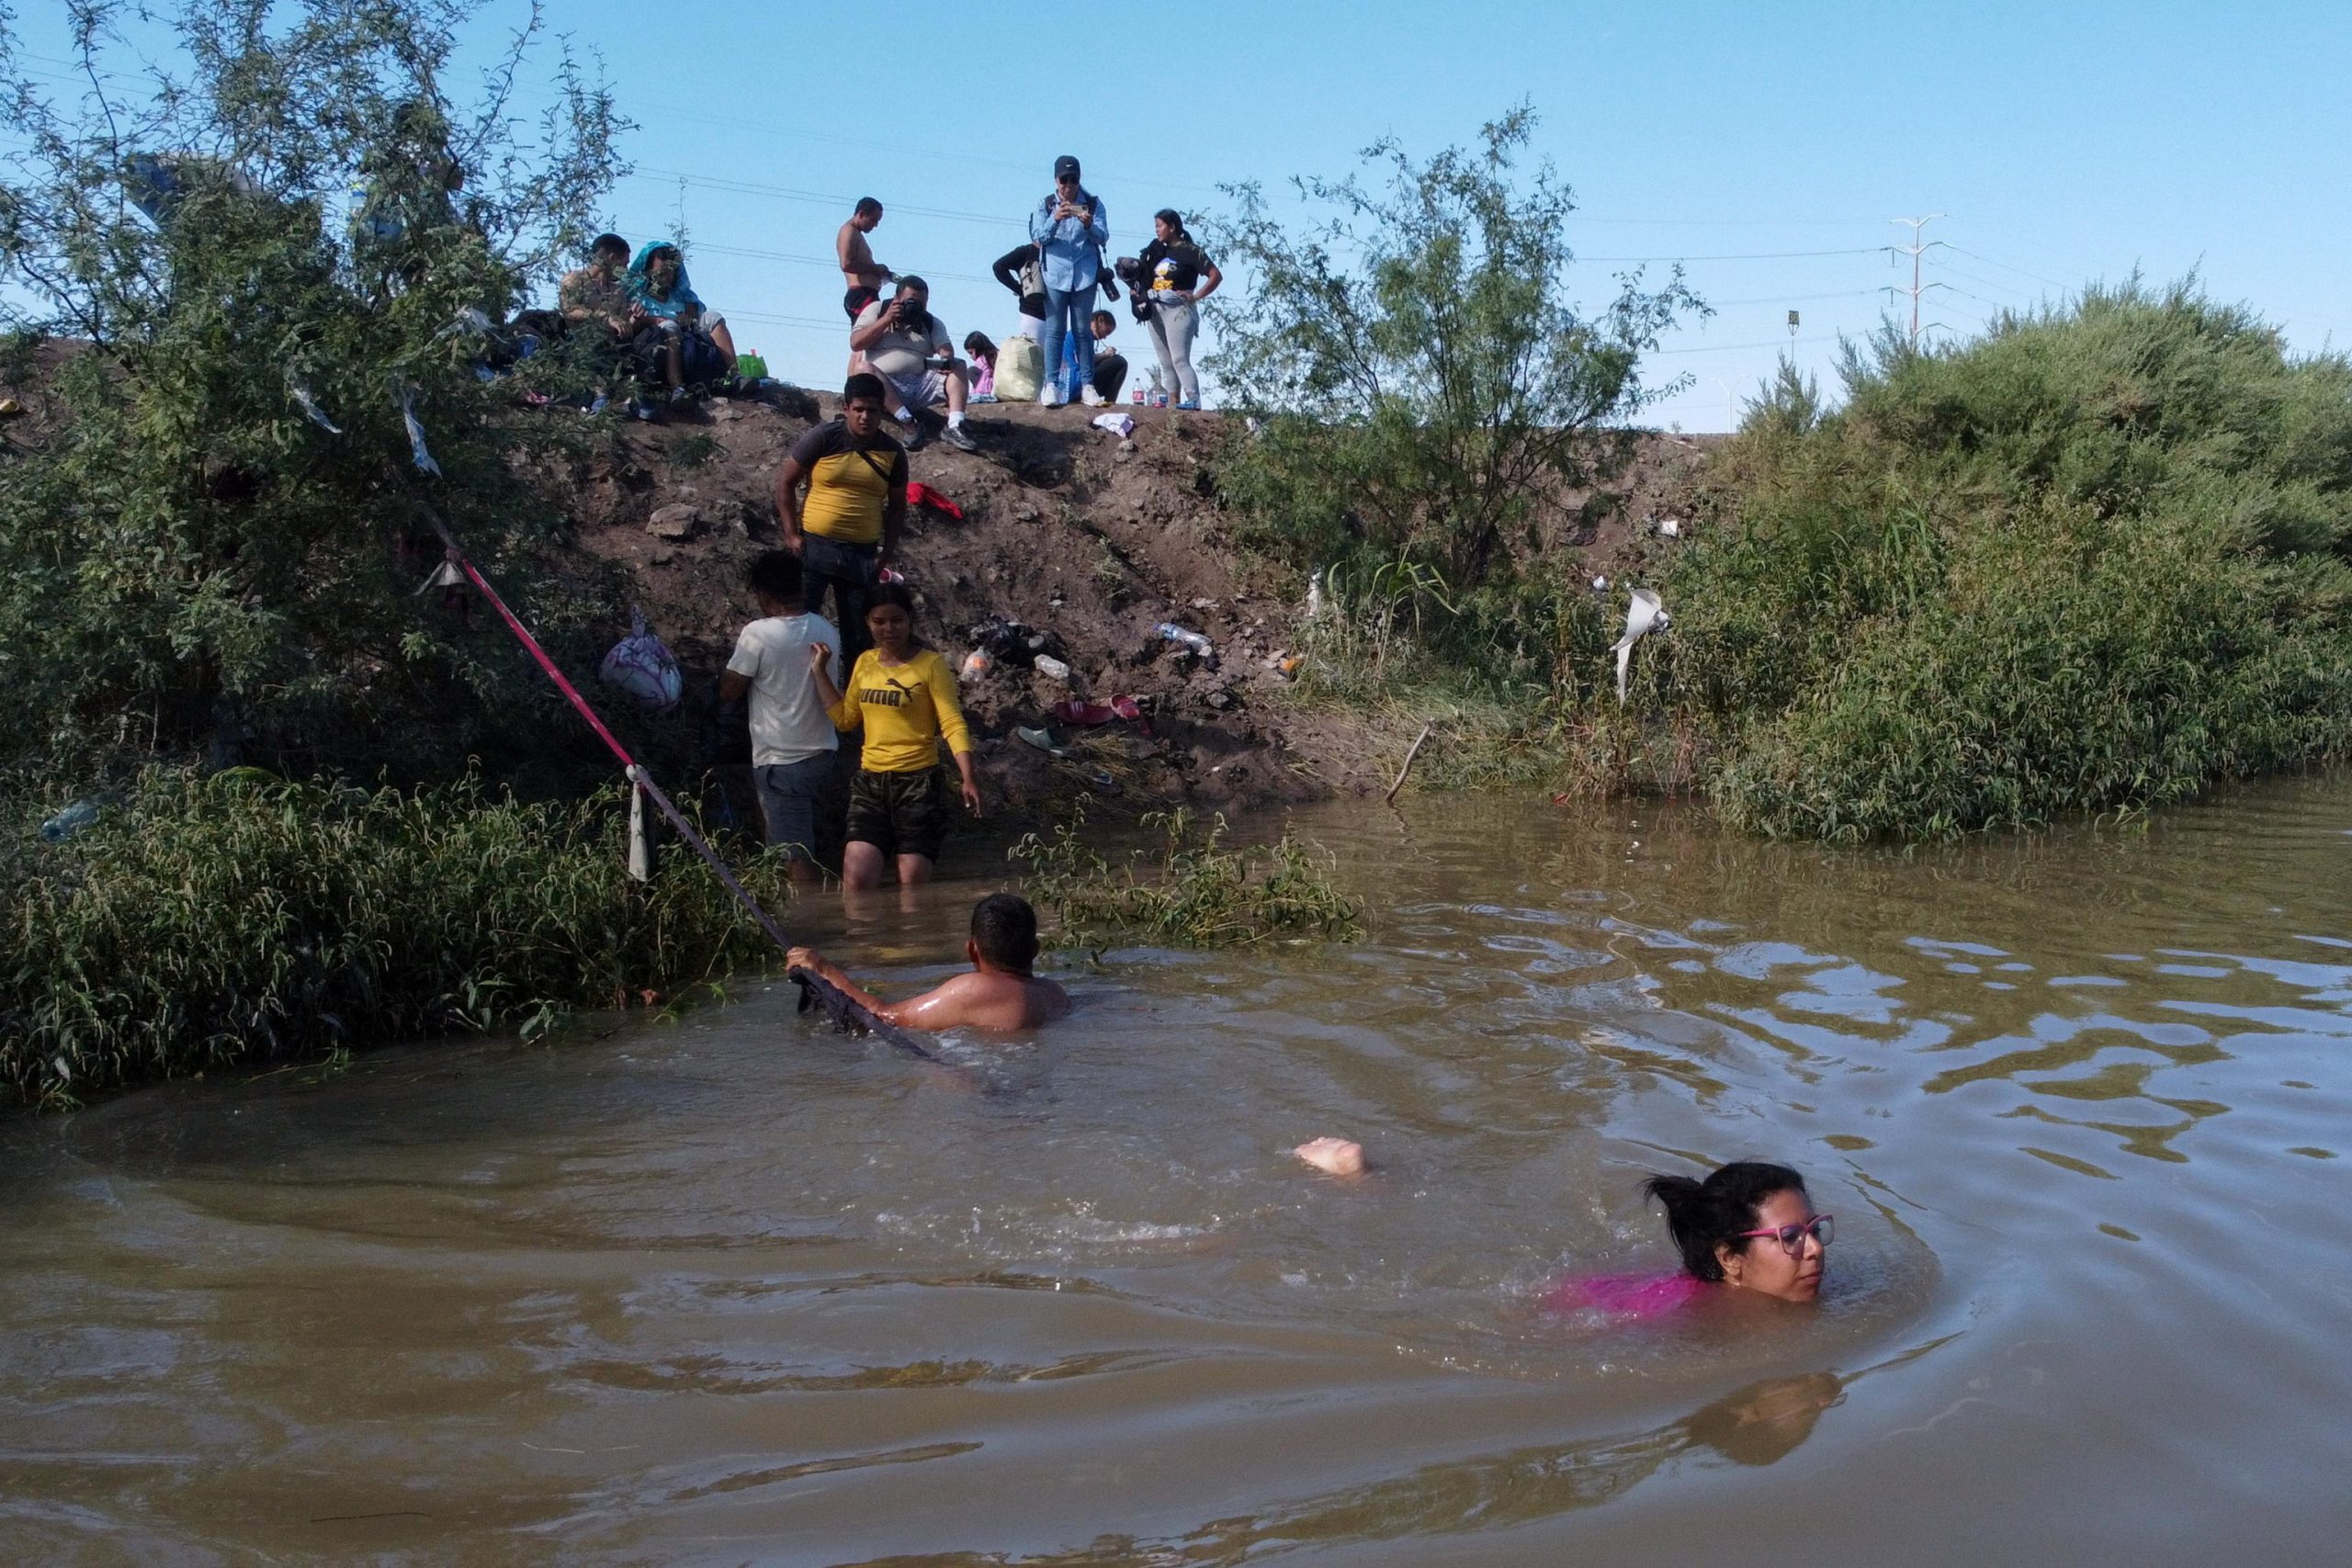 L'alto livello dell'acqua ha complicato il passaggio dei migranti